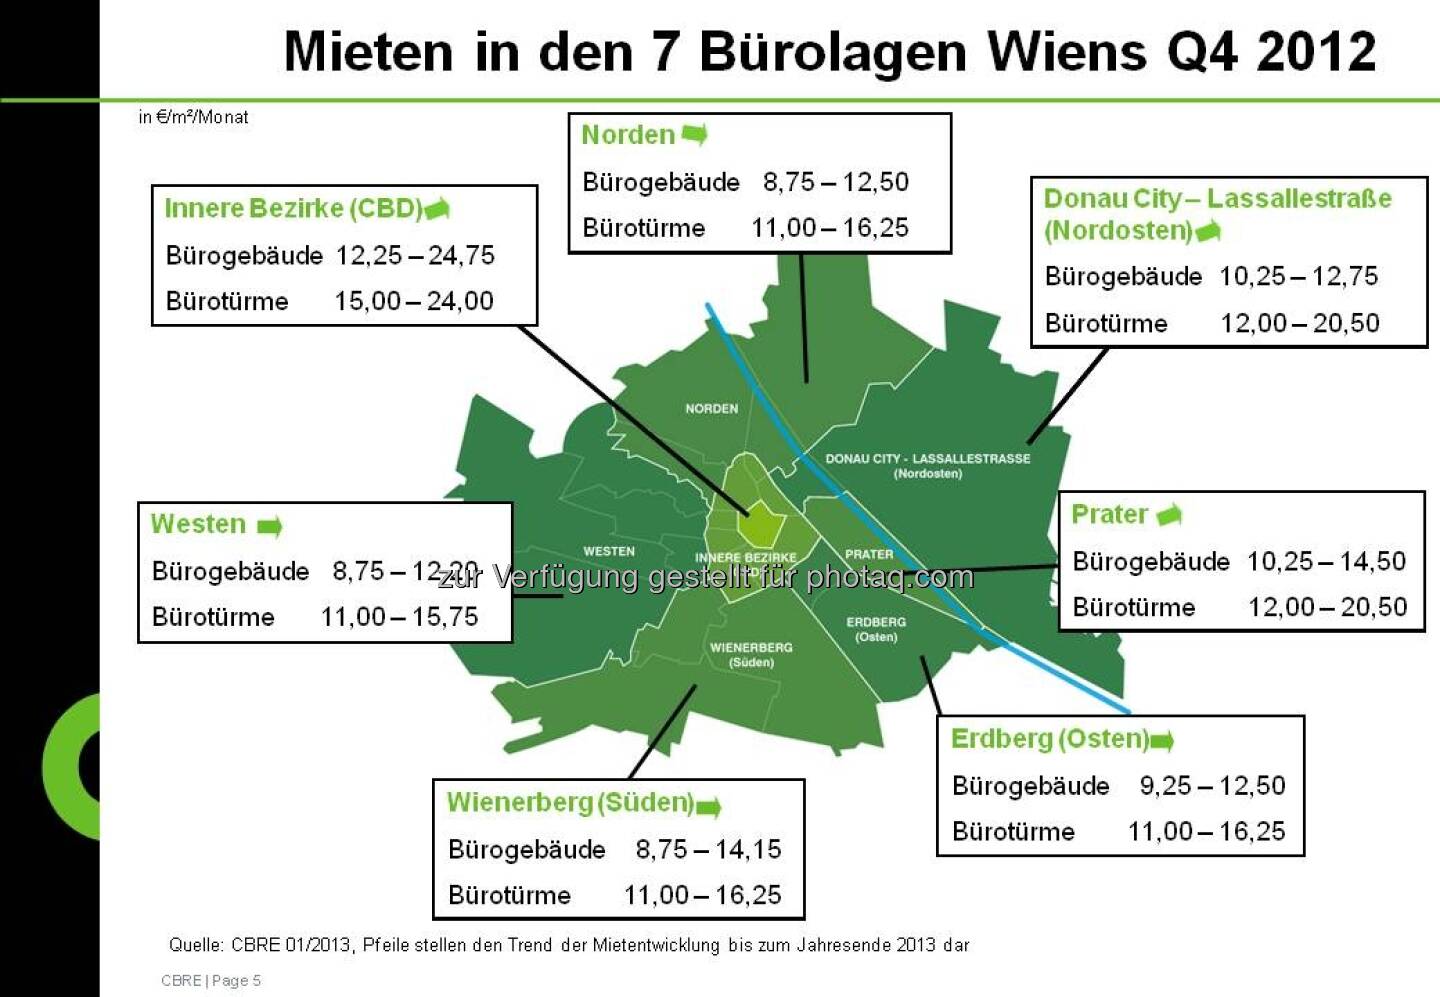 Mieten in den 7 Bürolagen Wiens aus der CBRE-Studie zum Immobilienmarkt Österreich 2012 (c) CBRE-Aussendung